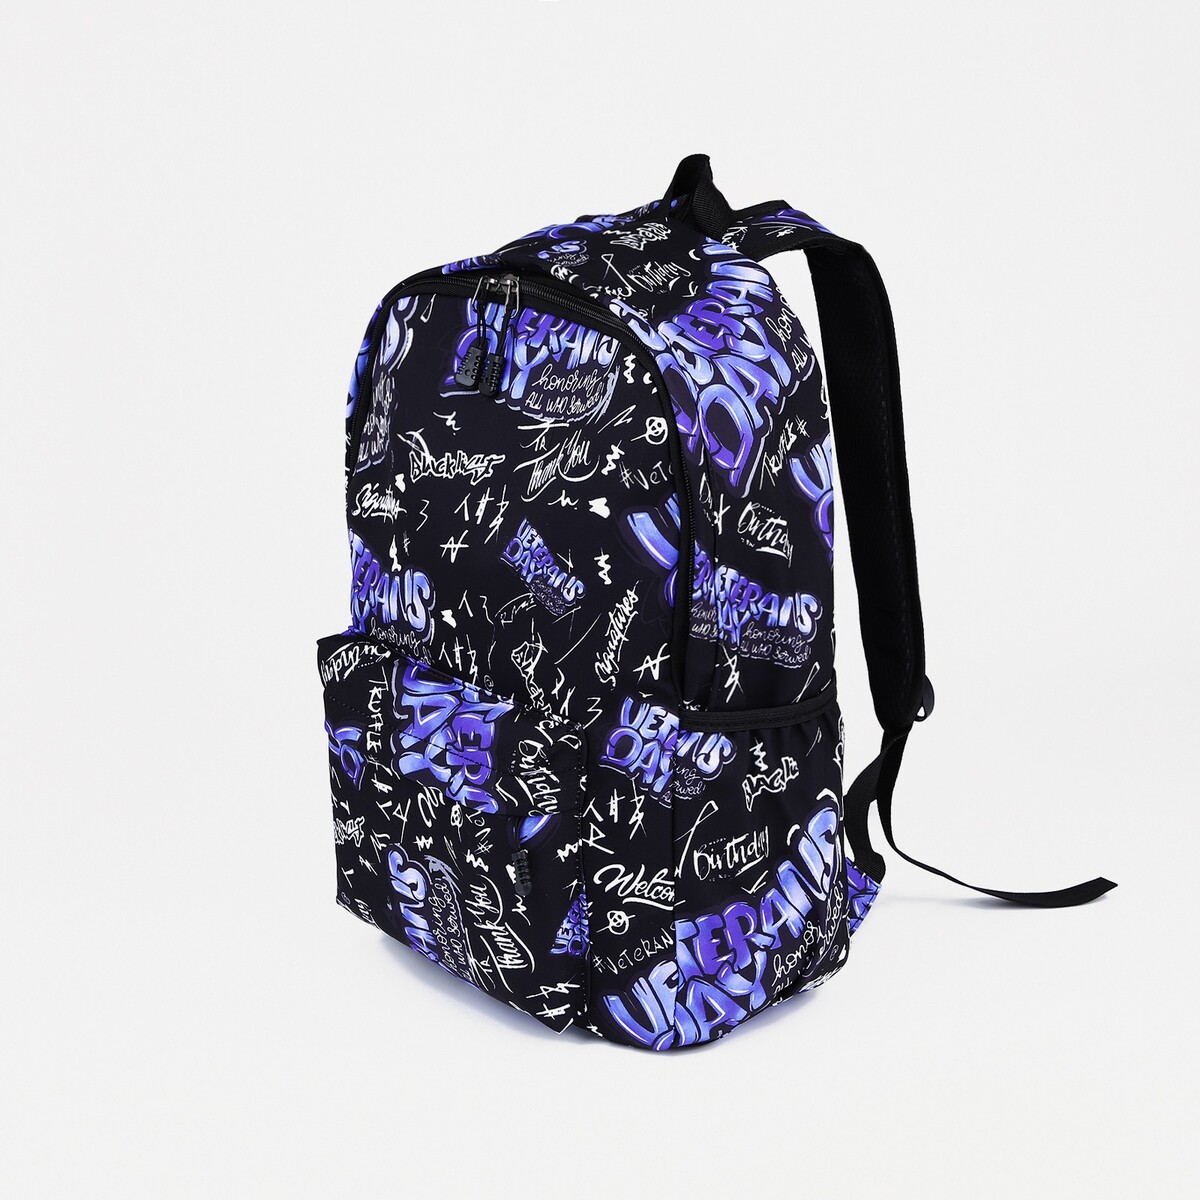 Рюкзак на молнии, 3 наружных кармана, цвет фиолетовый/черный рюкзак rafl панды фиолетовый